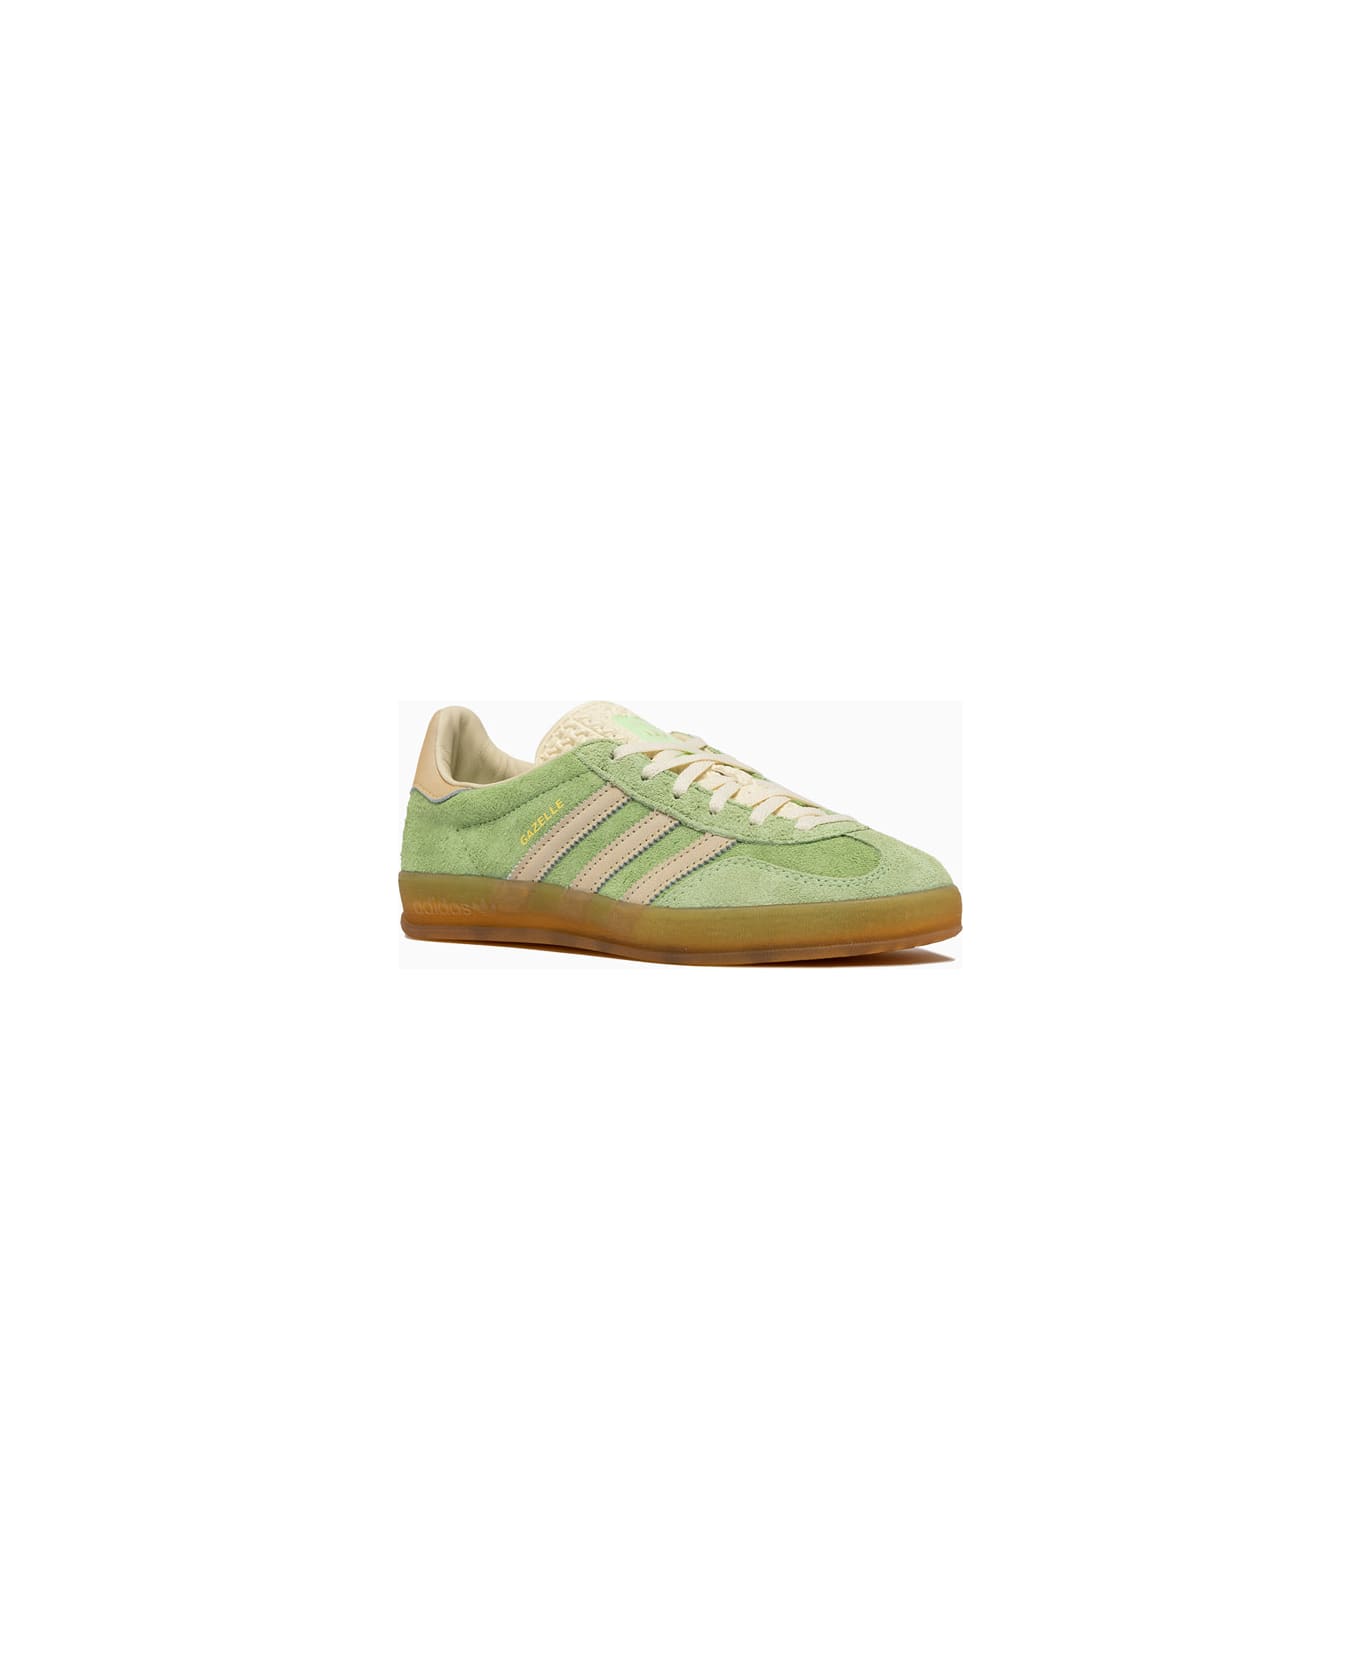 Adidas Originals Gazelle Indoor W Sneakers Ie2948 - Green スニーカー